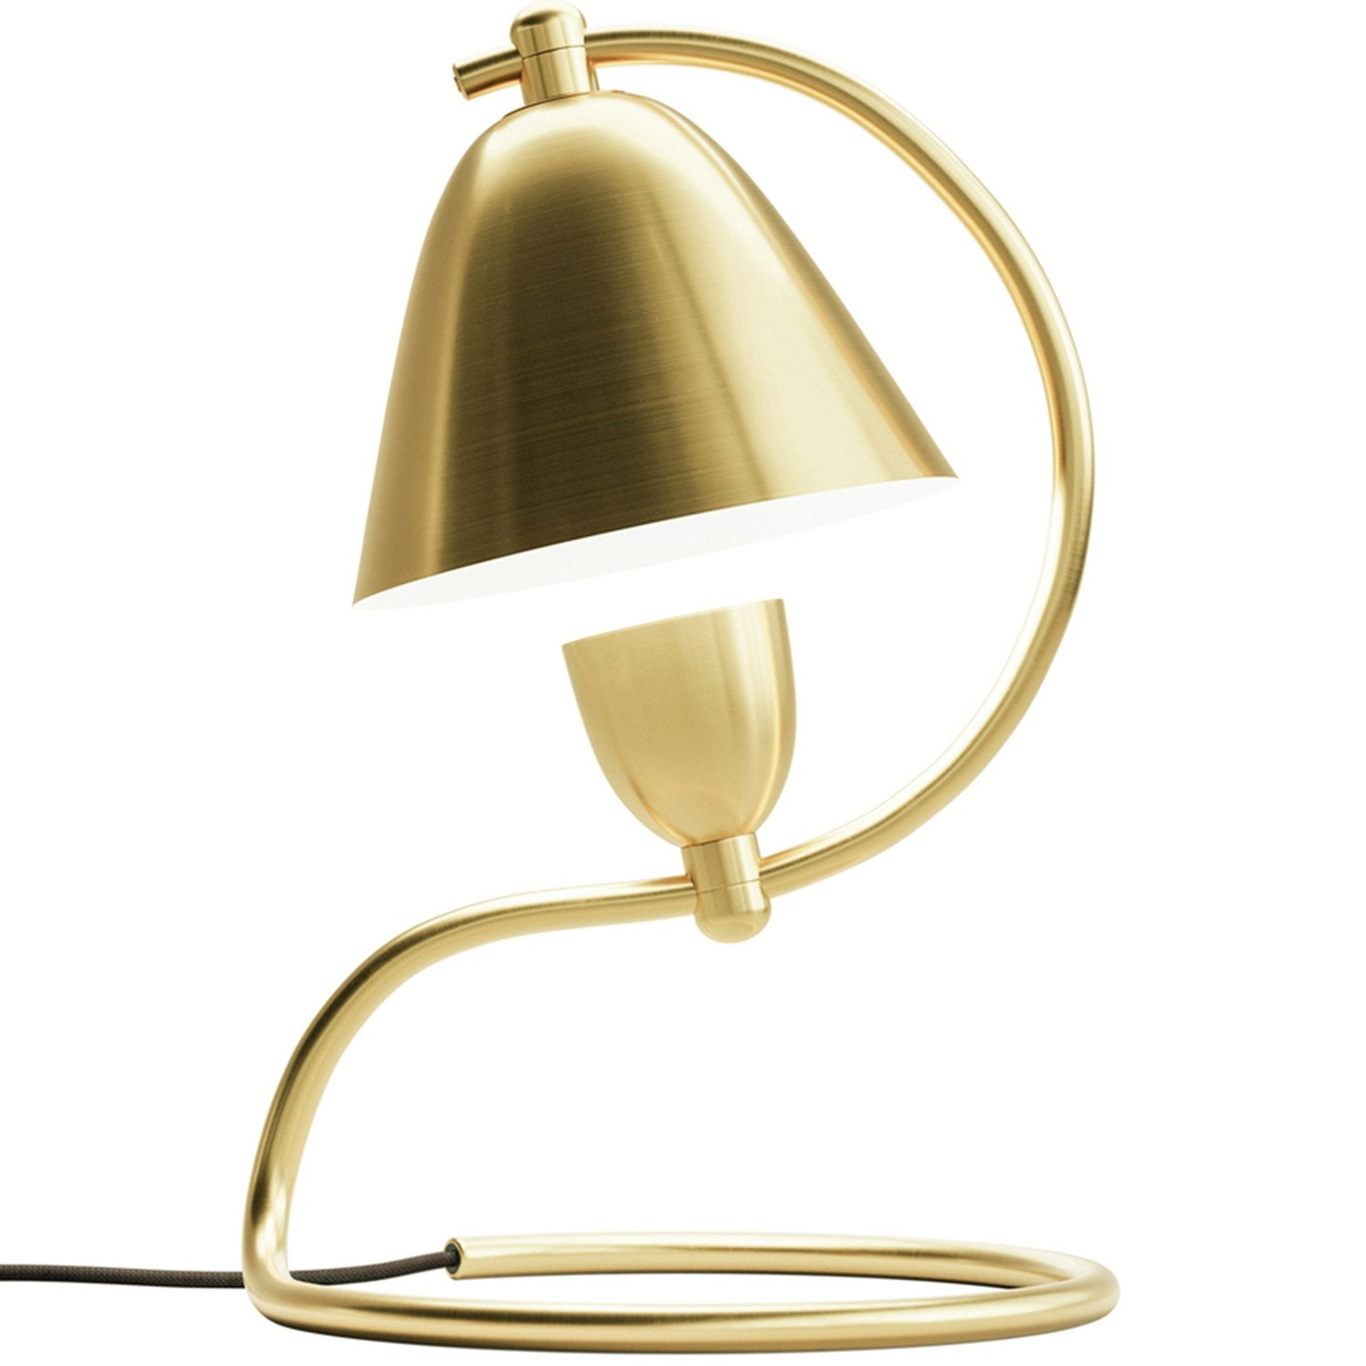 Klampenborg Table Lamp, Polished Brass